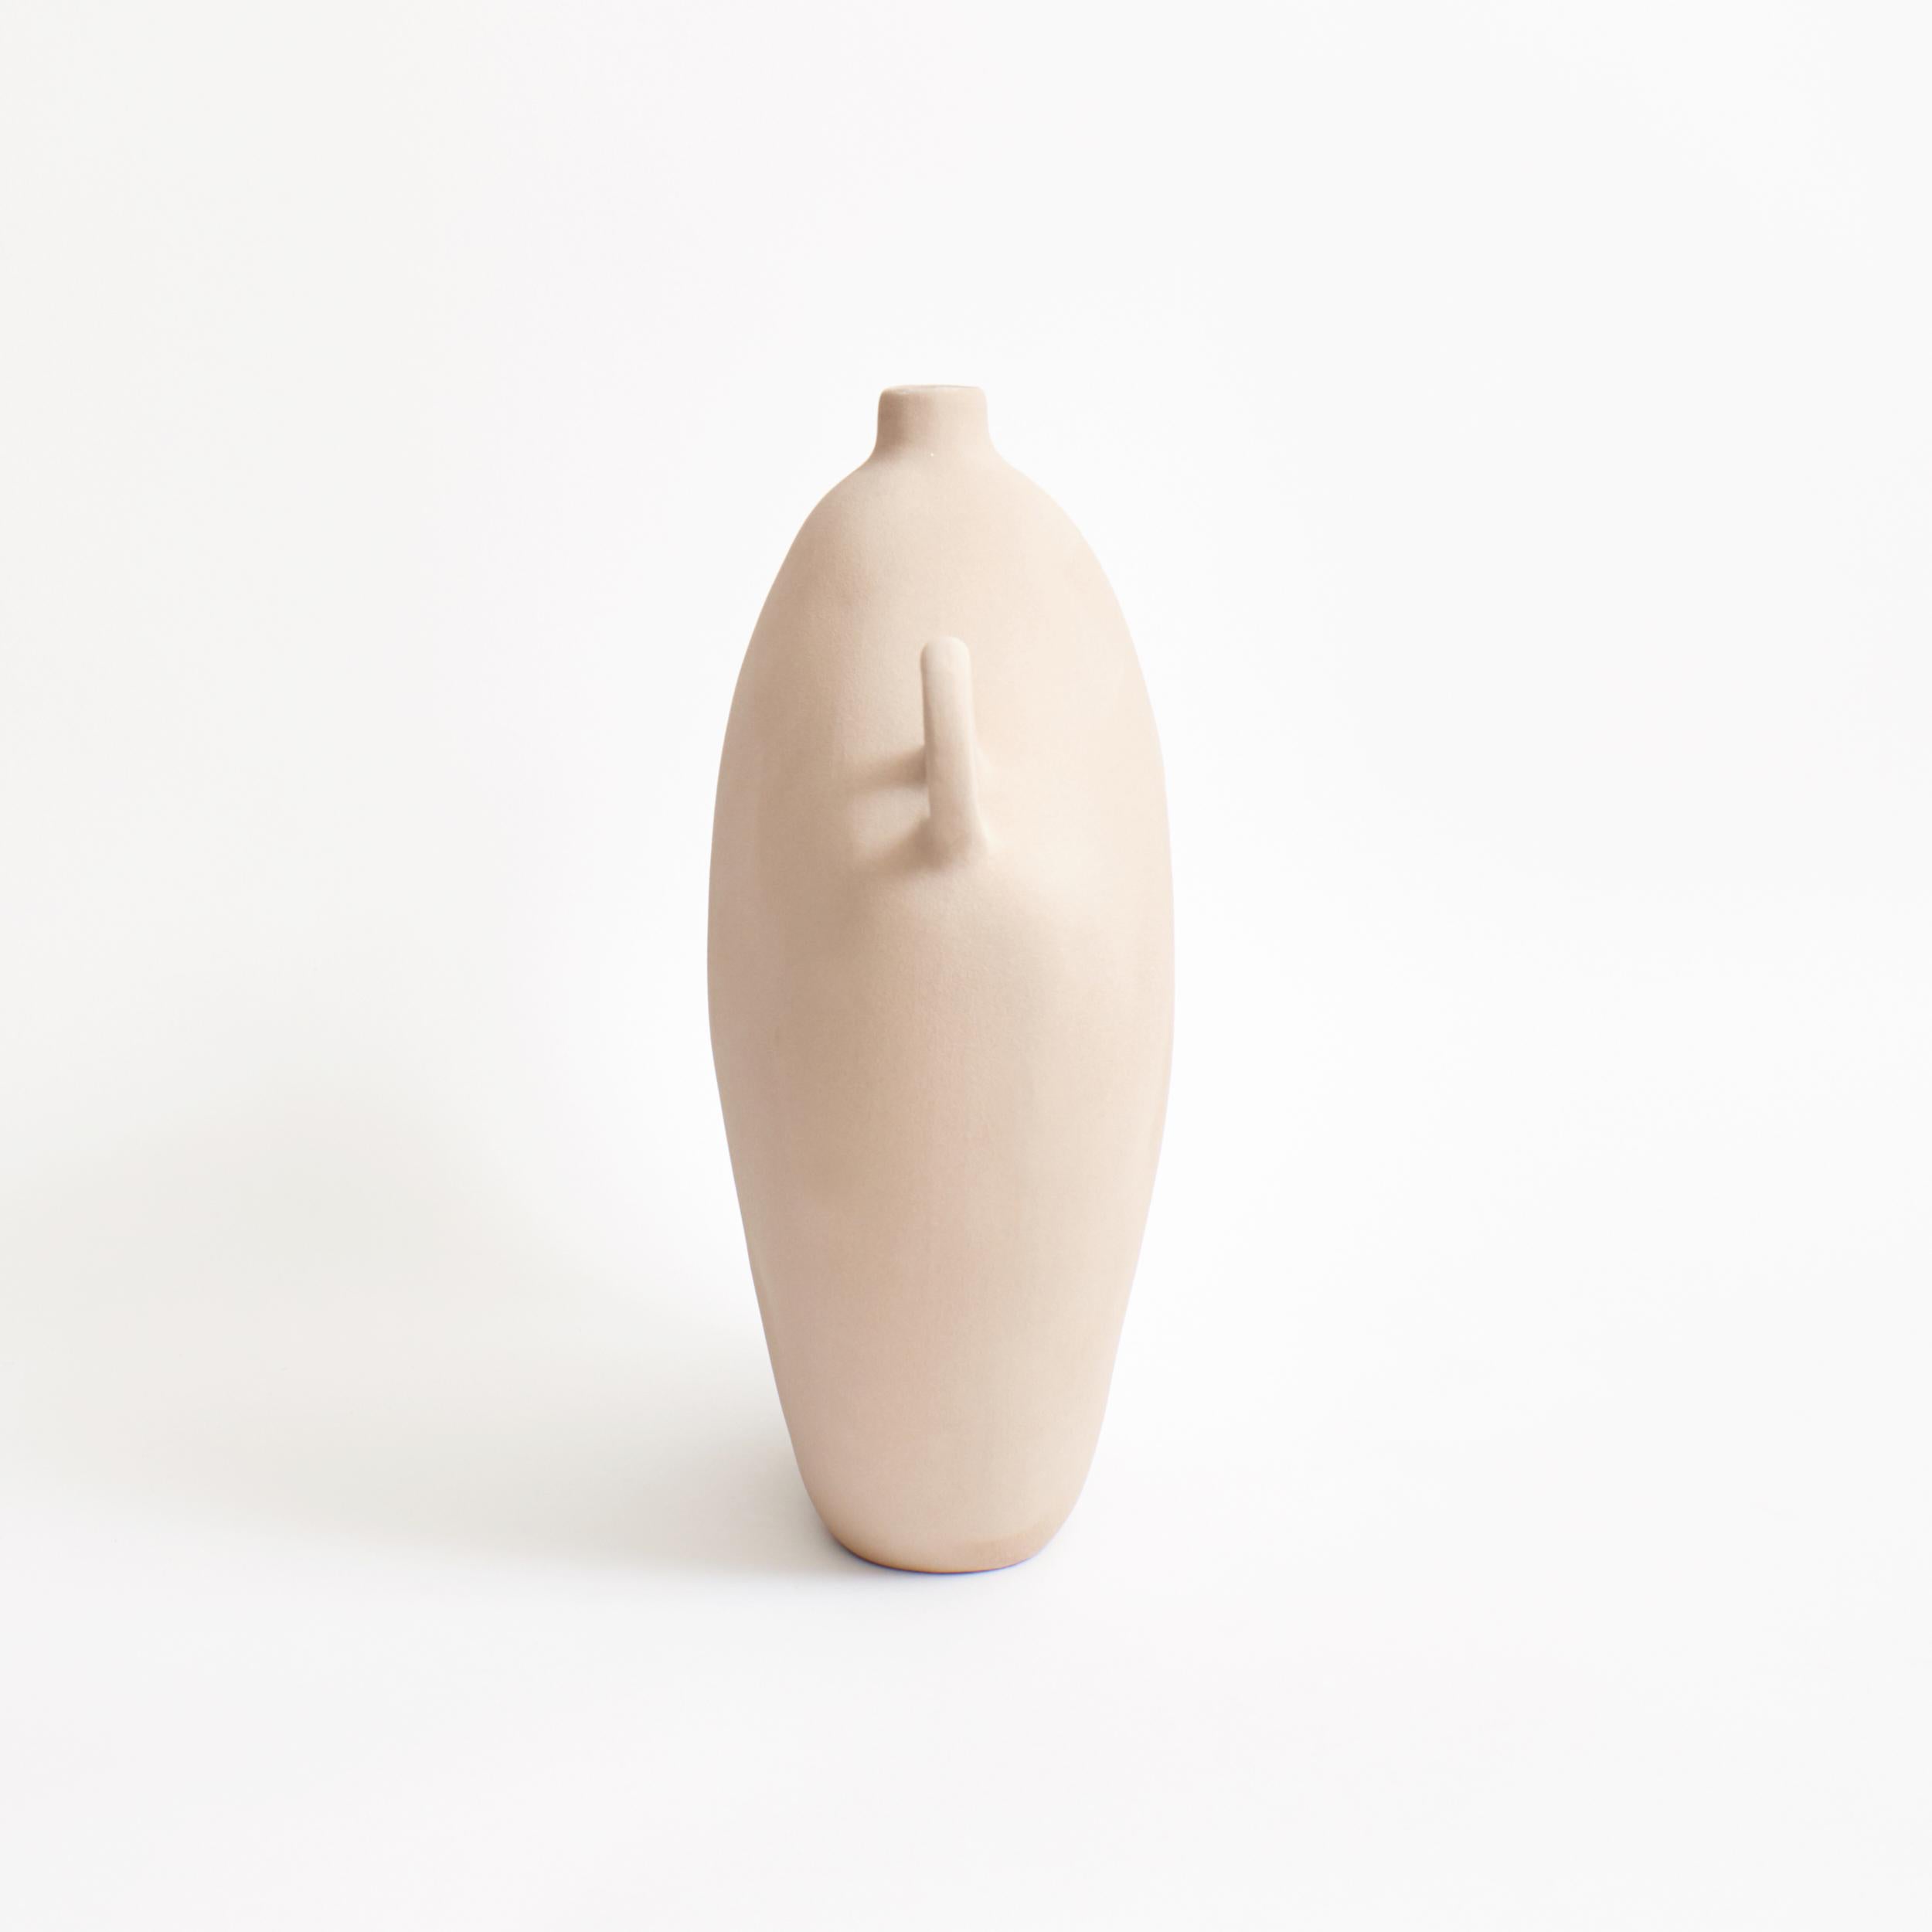 Vaisseau Maria en avoine
Conçu par le project 213A en 2020
Grès fait main

Ce vase, inspiré de la période gréco-romaine, a une apparence intemporelle et se termine par une glaçure contemporaine texturée et brillante. Chaque pièce développe son